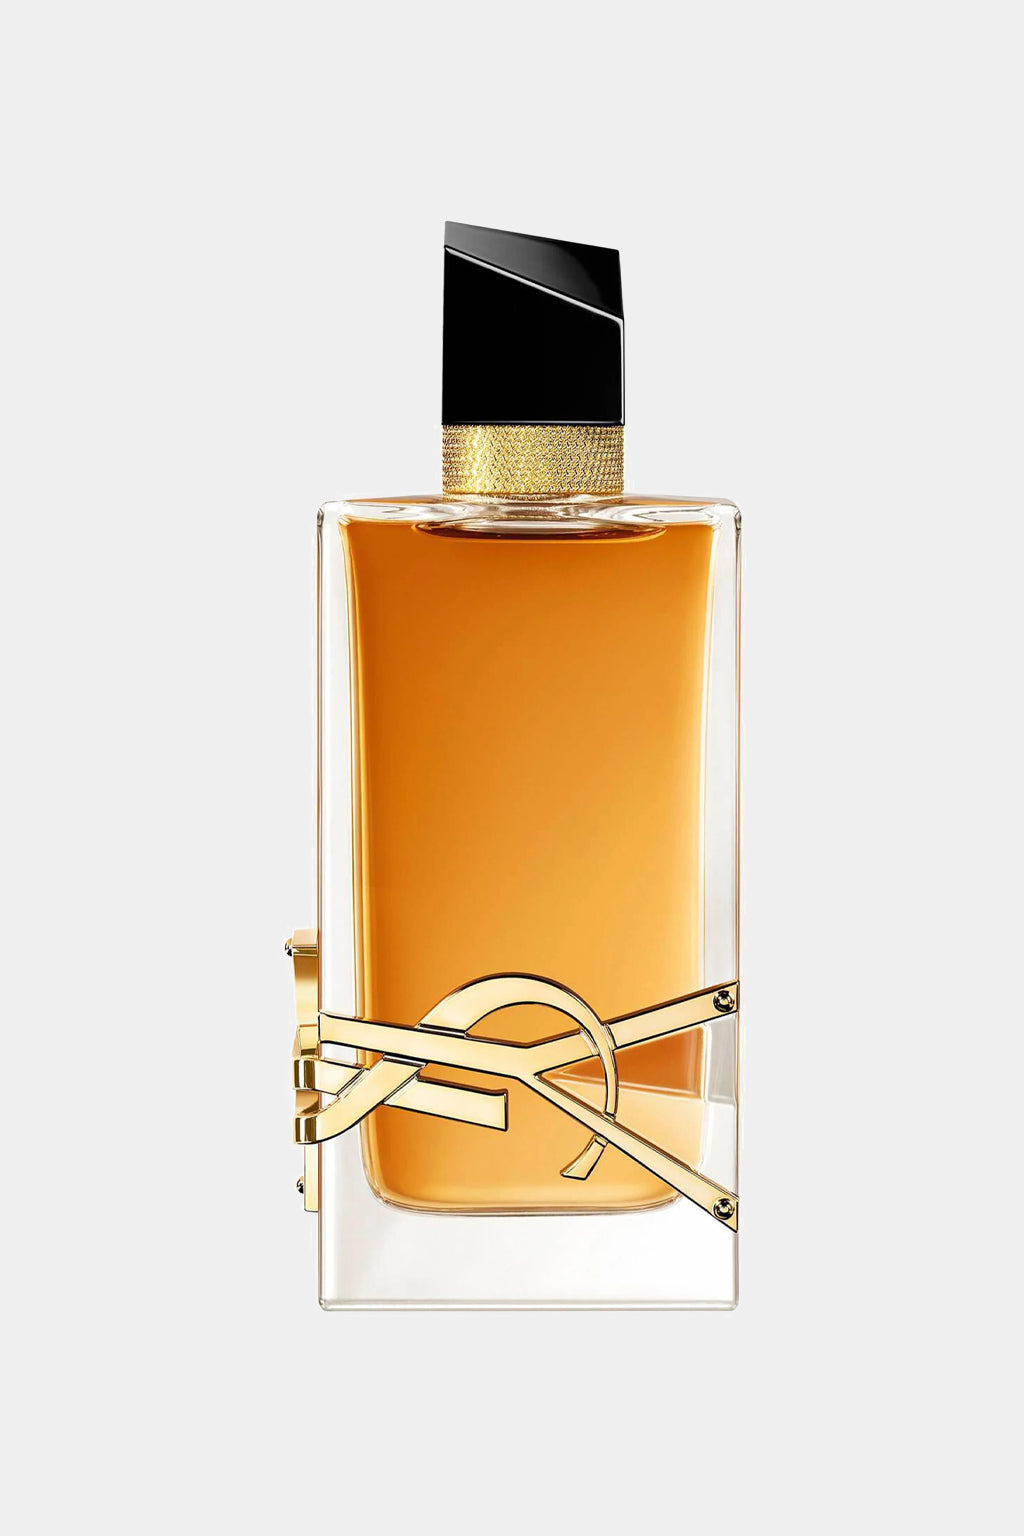 Yves Saint Laurent - Libre Intense Eau de Parfum